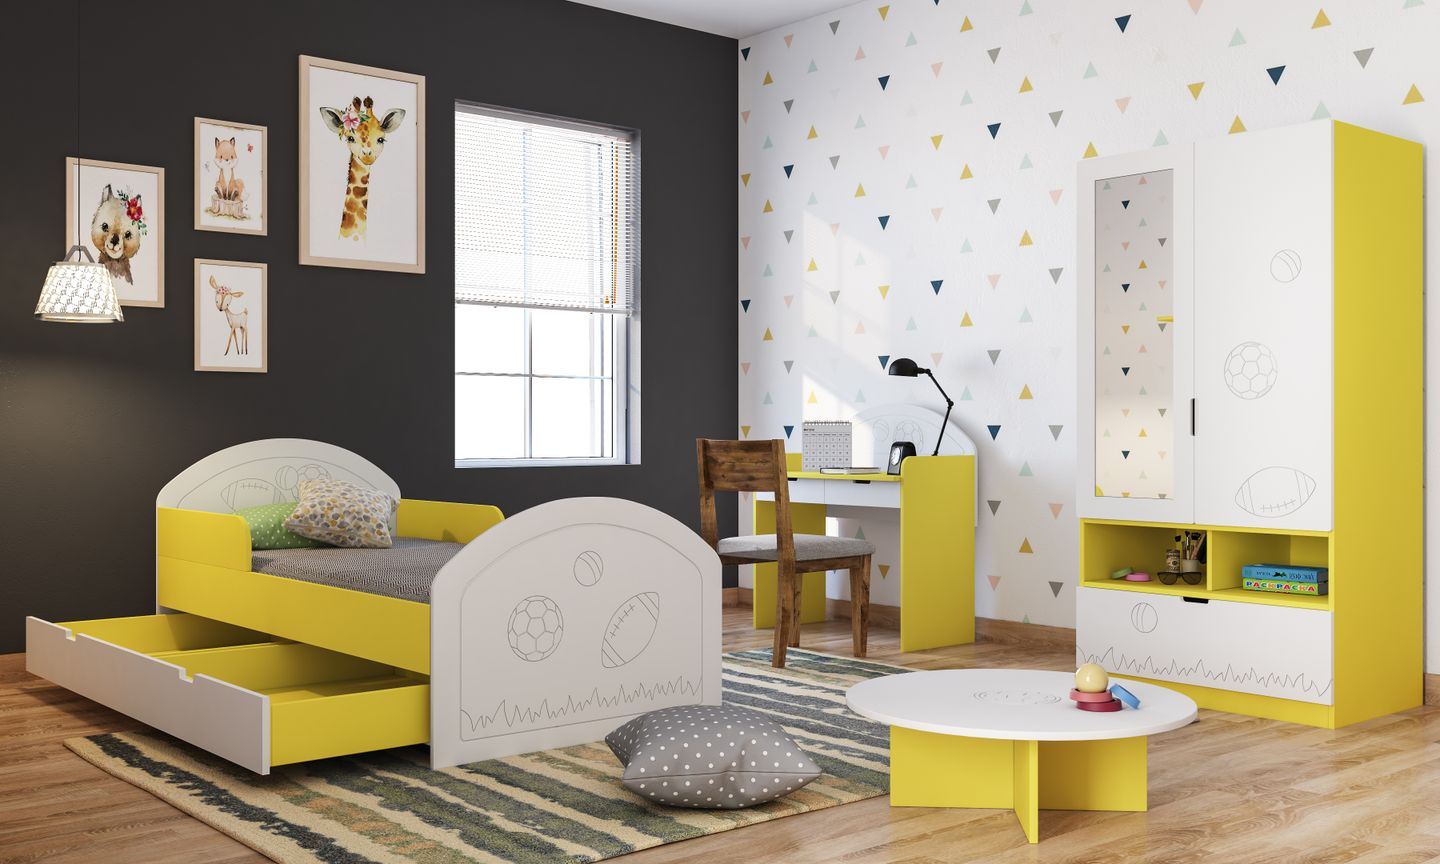 Perky Kids Bedroom Design